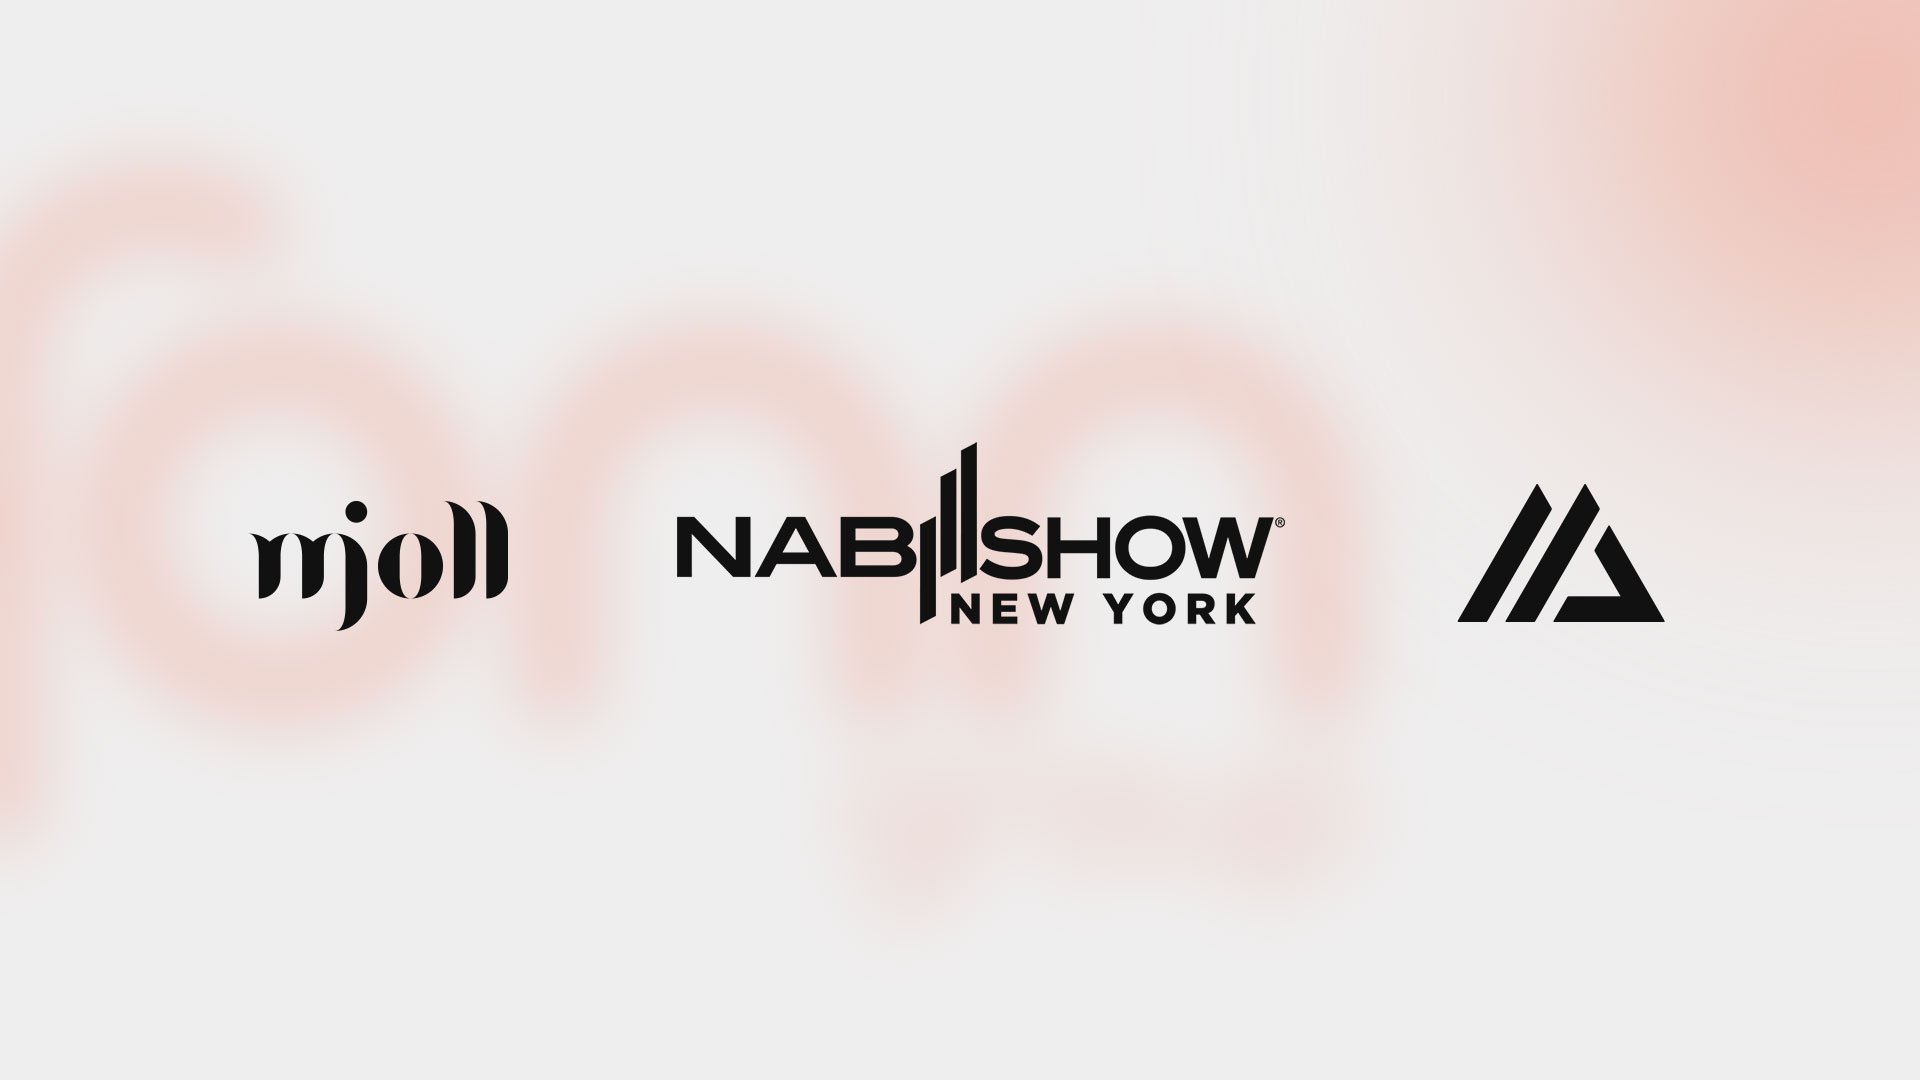 See Fonn Group companies Mjoll and 7Mountains at NAB Show NY